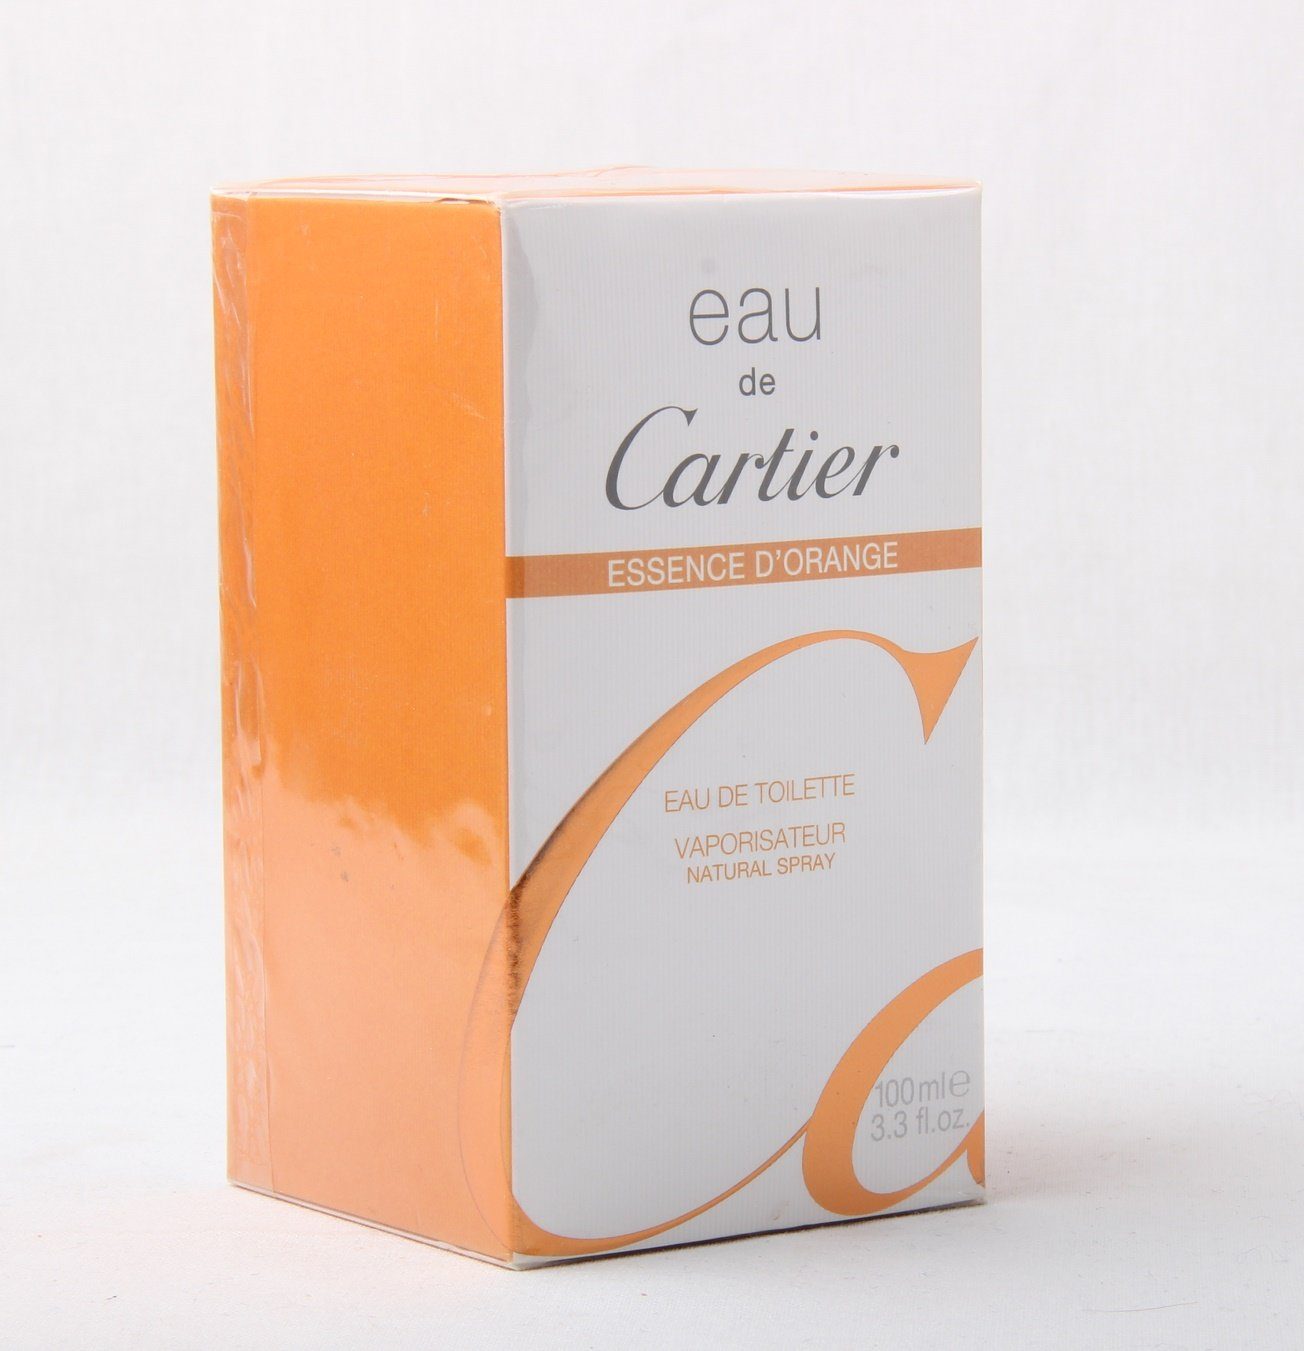 100ml Eau de de D'Orange Toilette de Cartier Cartier Spray Toilette Eau Essence Eau